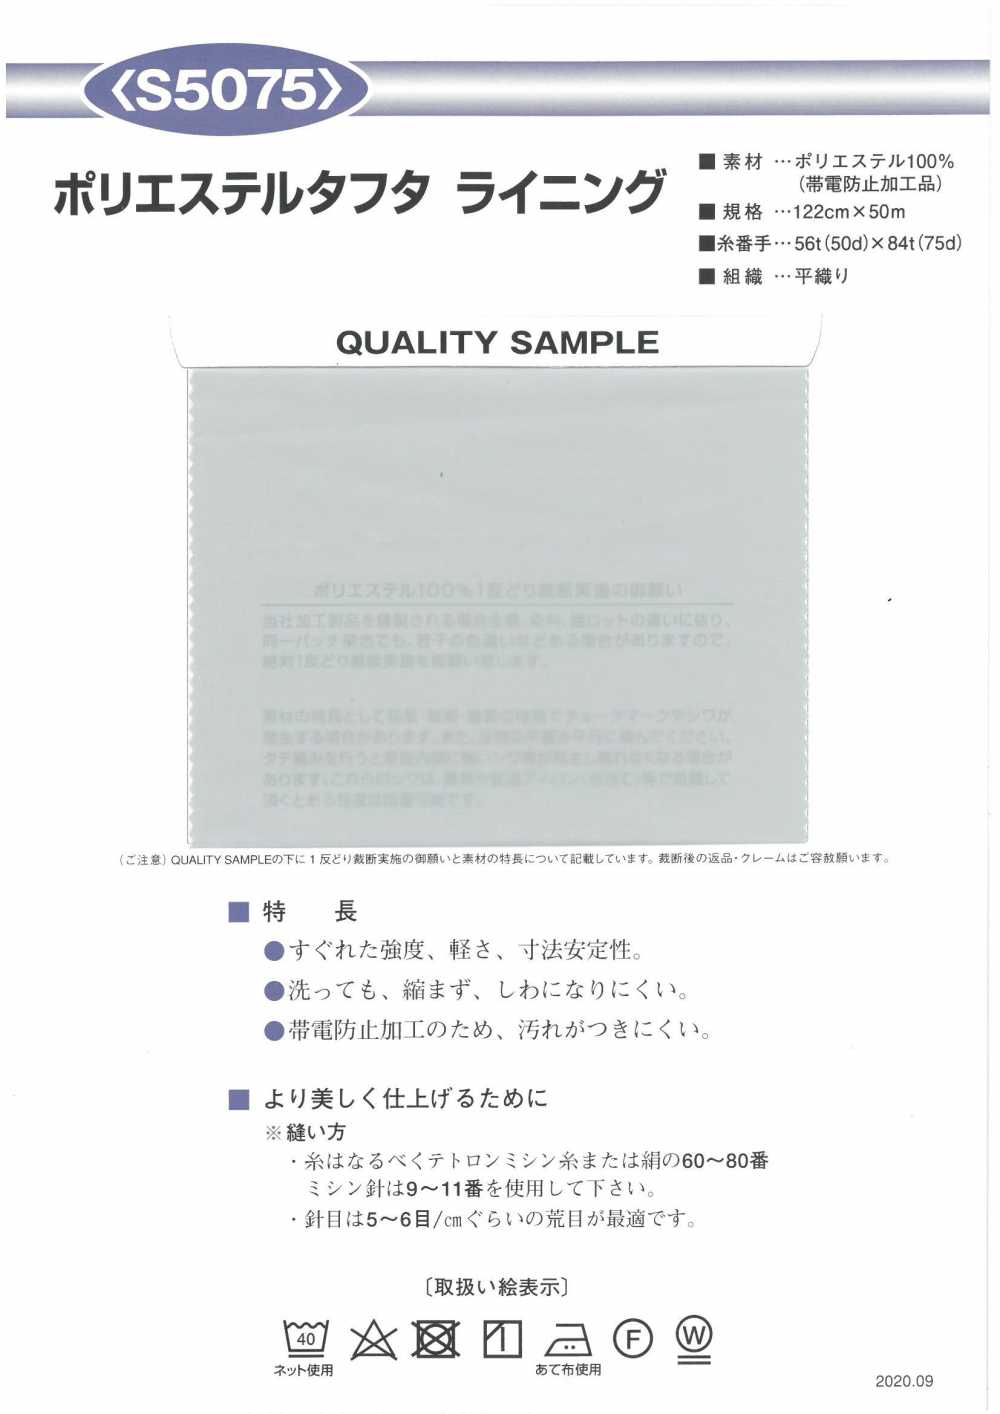 S5075 190 Polyester Lining Taffeta Nishiyama